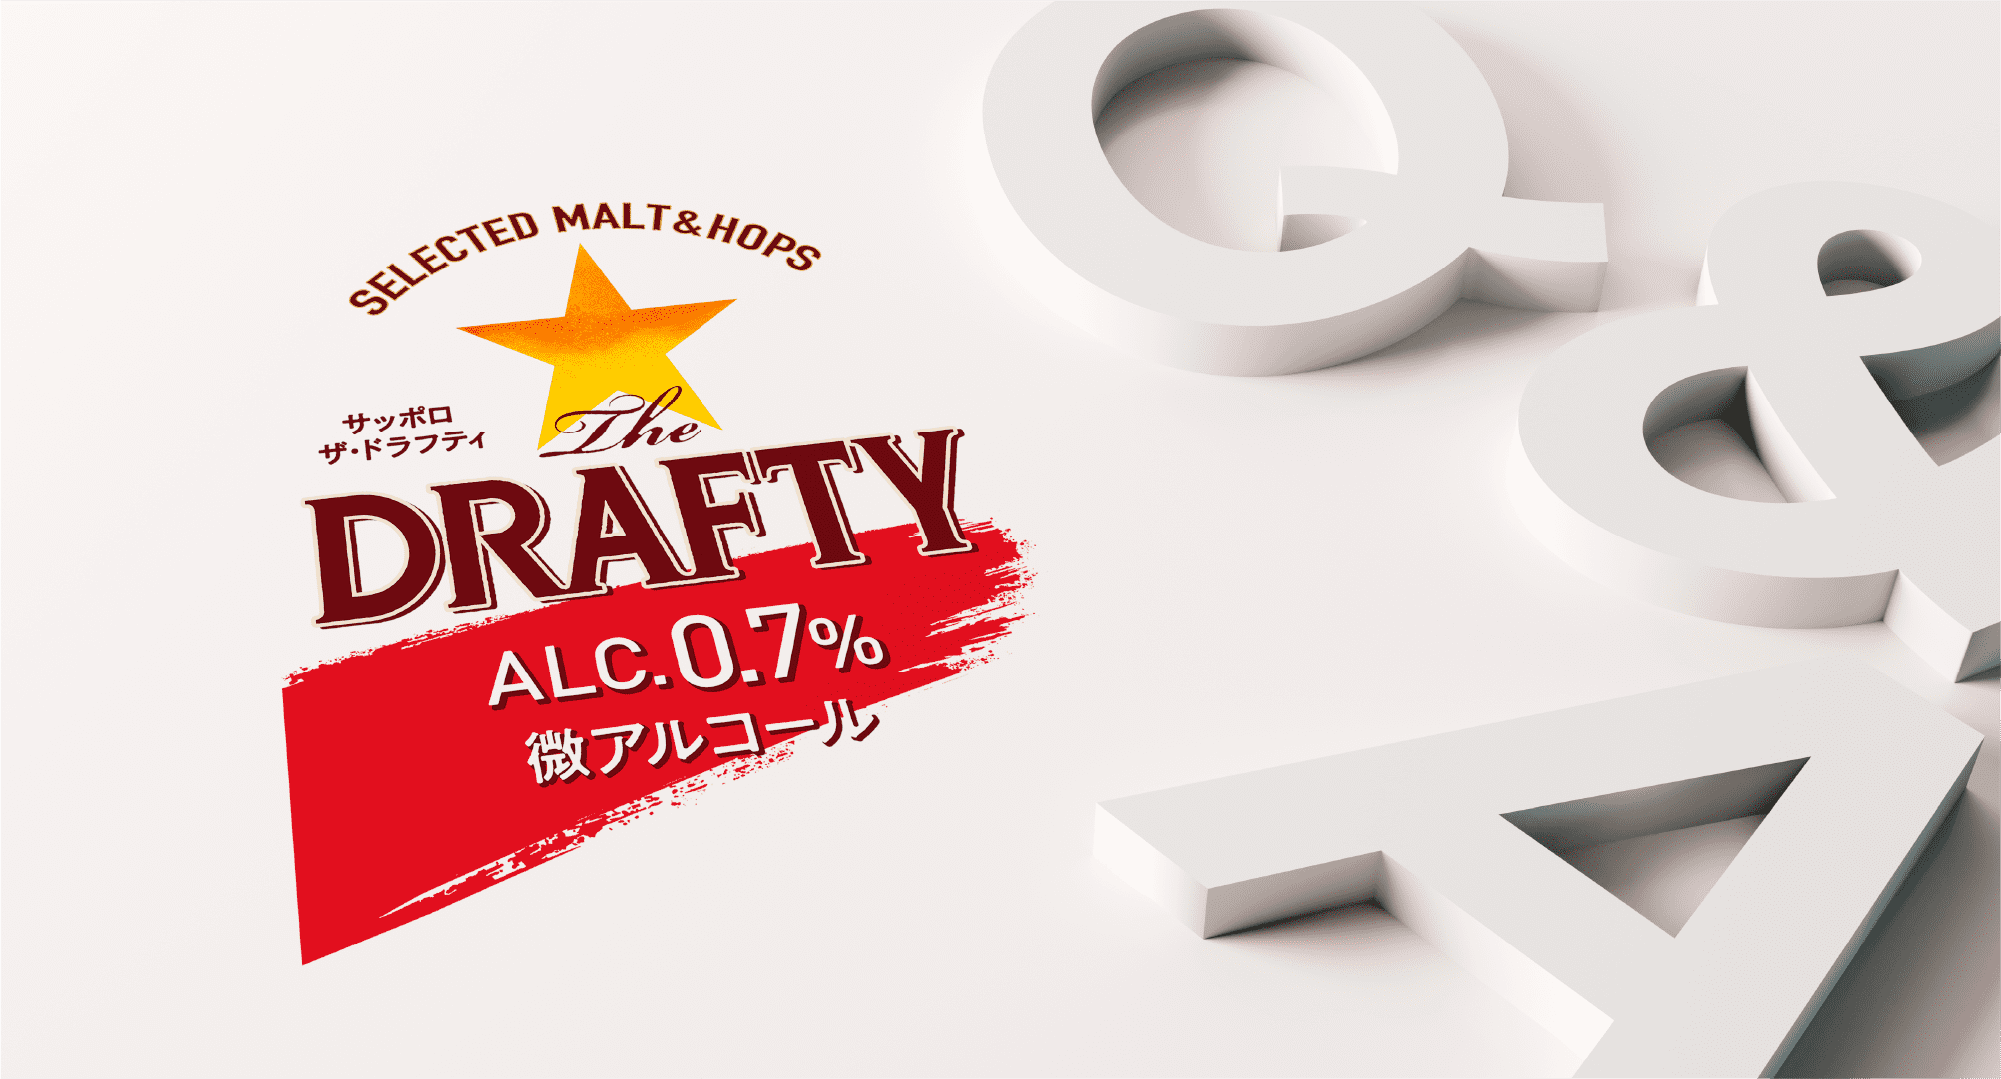 SELECTED MALT&HOPS サッポロ ザ・ドラフティ ALC.0.7% 微アルコール